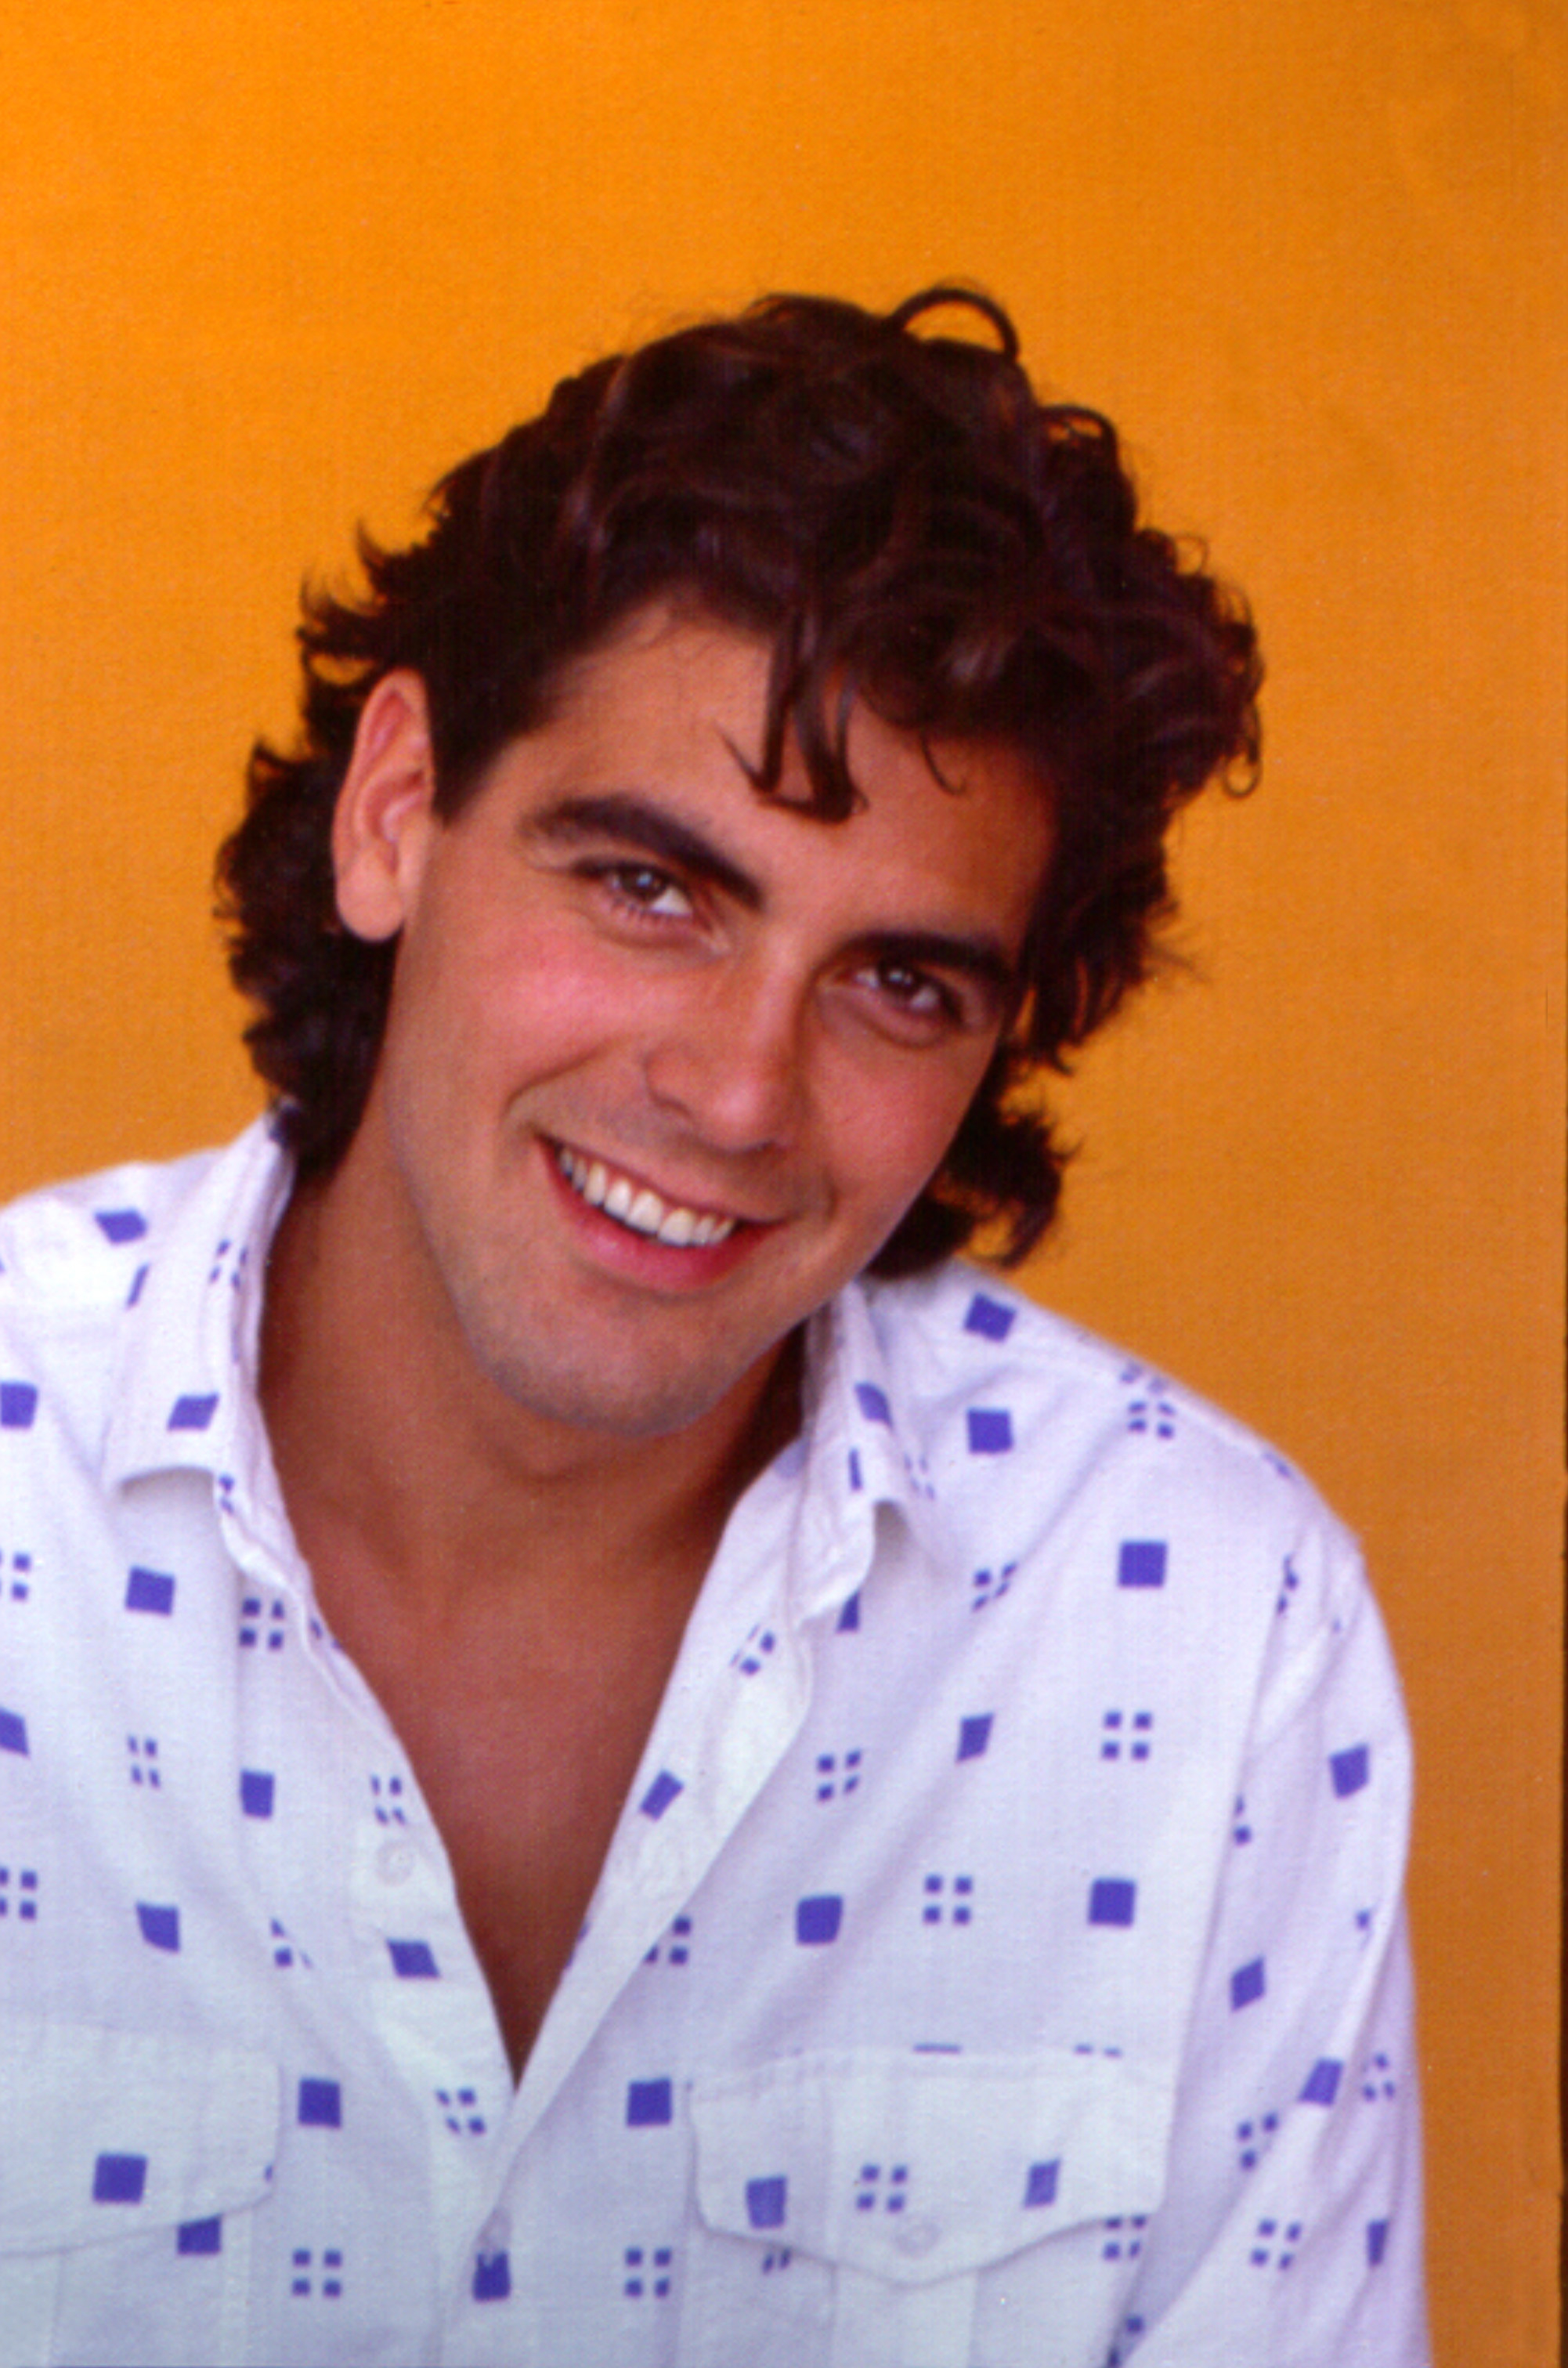 Джордж Клуни в молодости